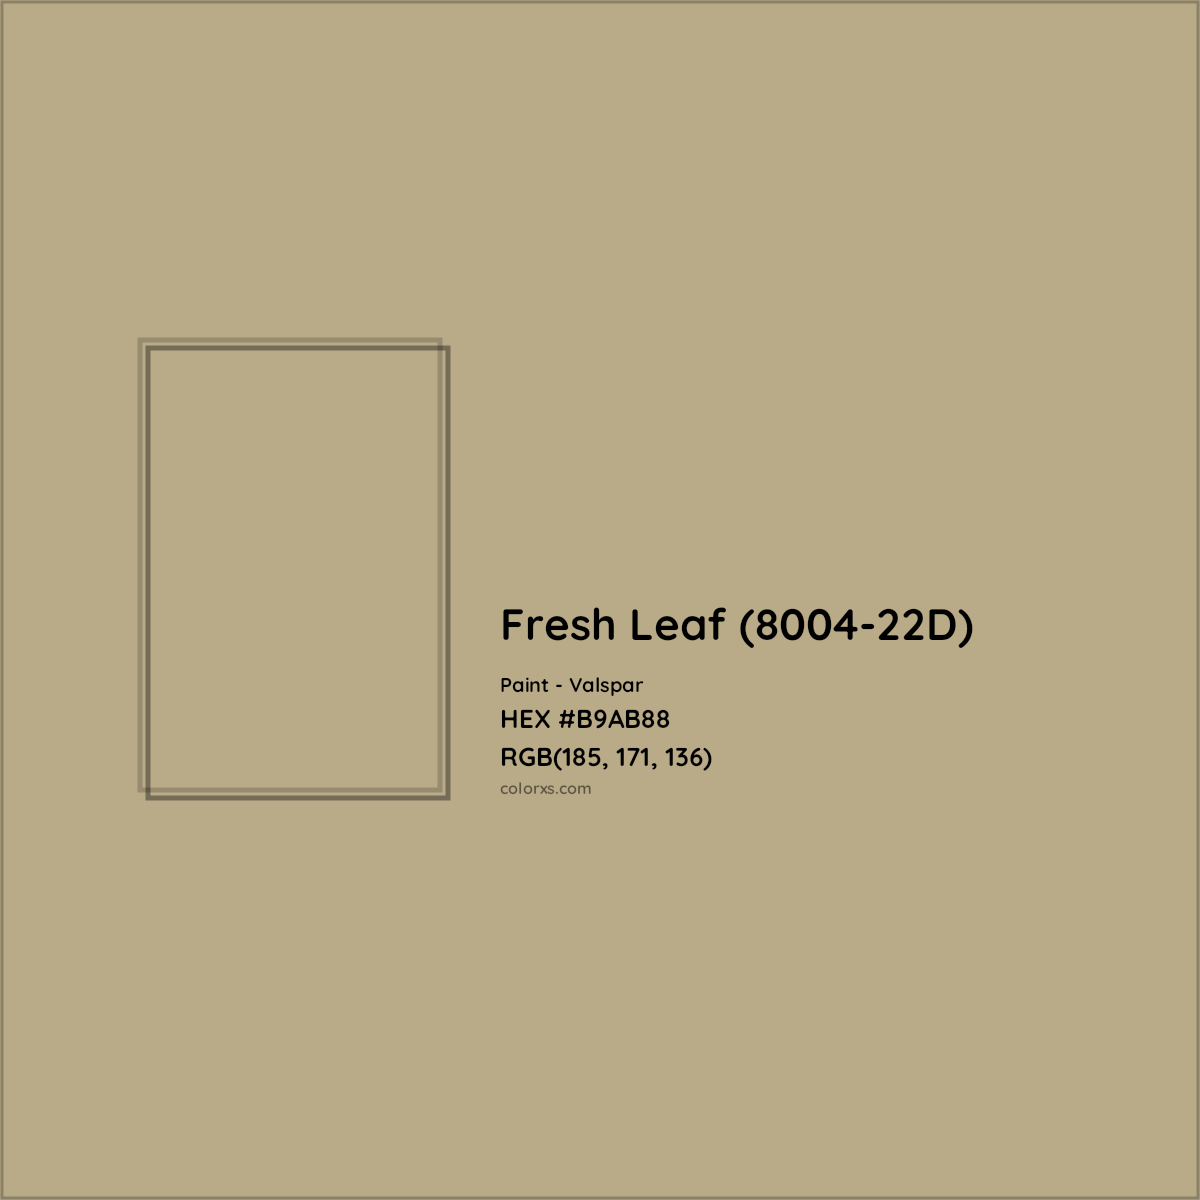 HEX #B9AB88 Fresh Leaf (8004-22D) Paint Valspar - Color Code